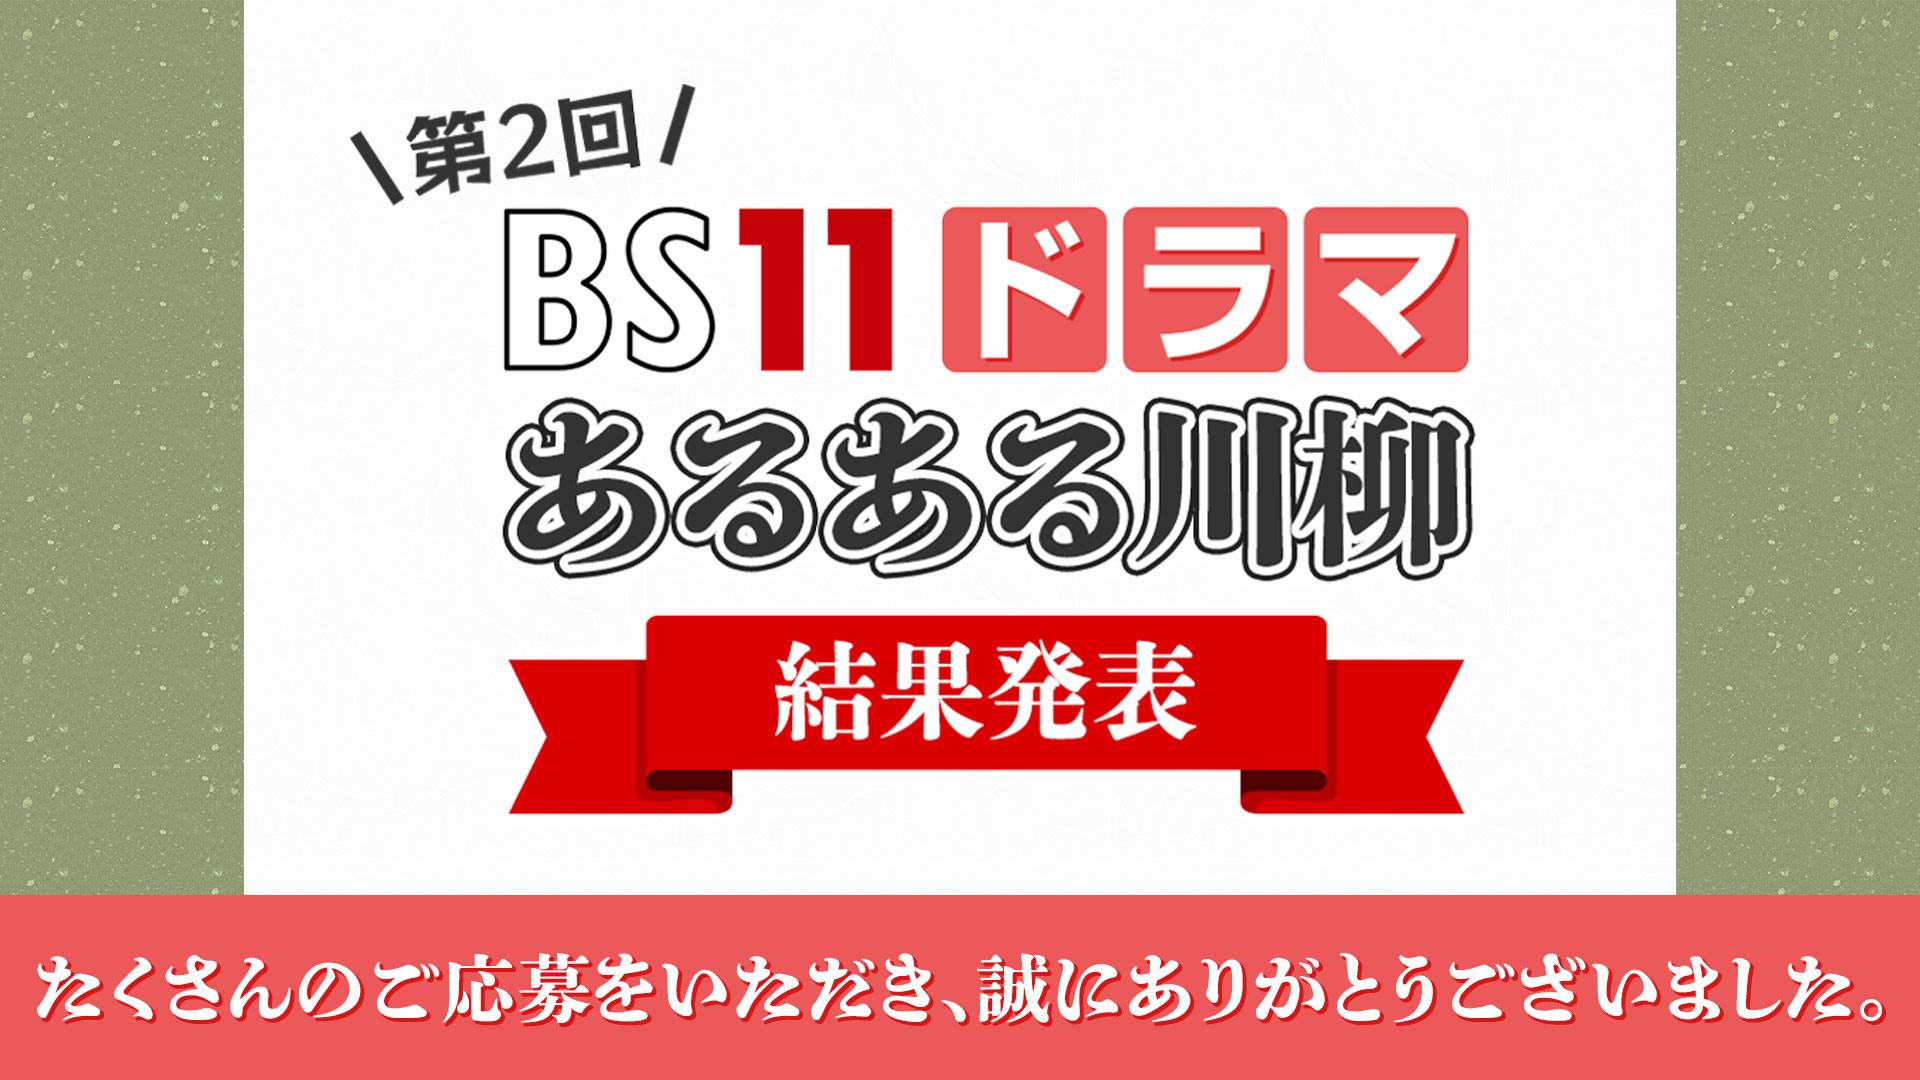 第2回 BS11ドラマあるある川柳 結果発表